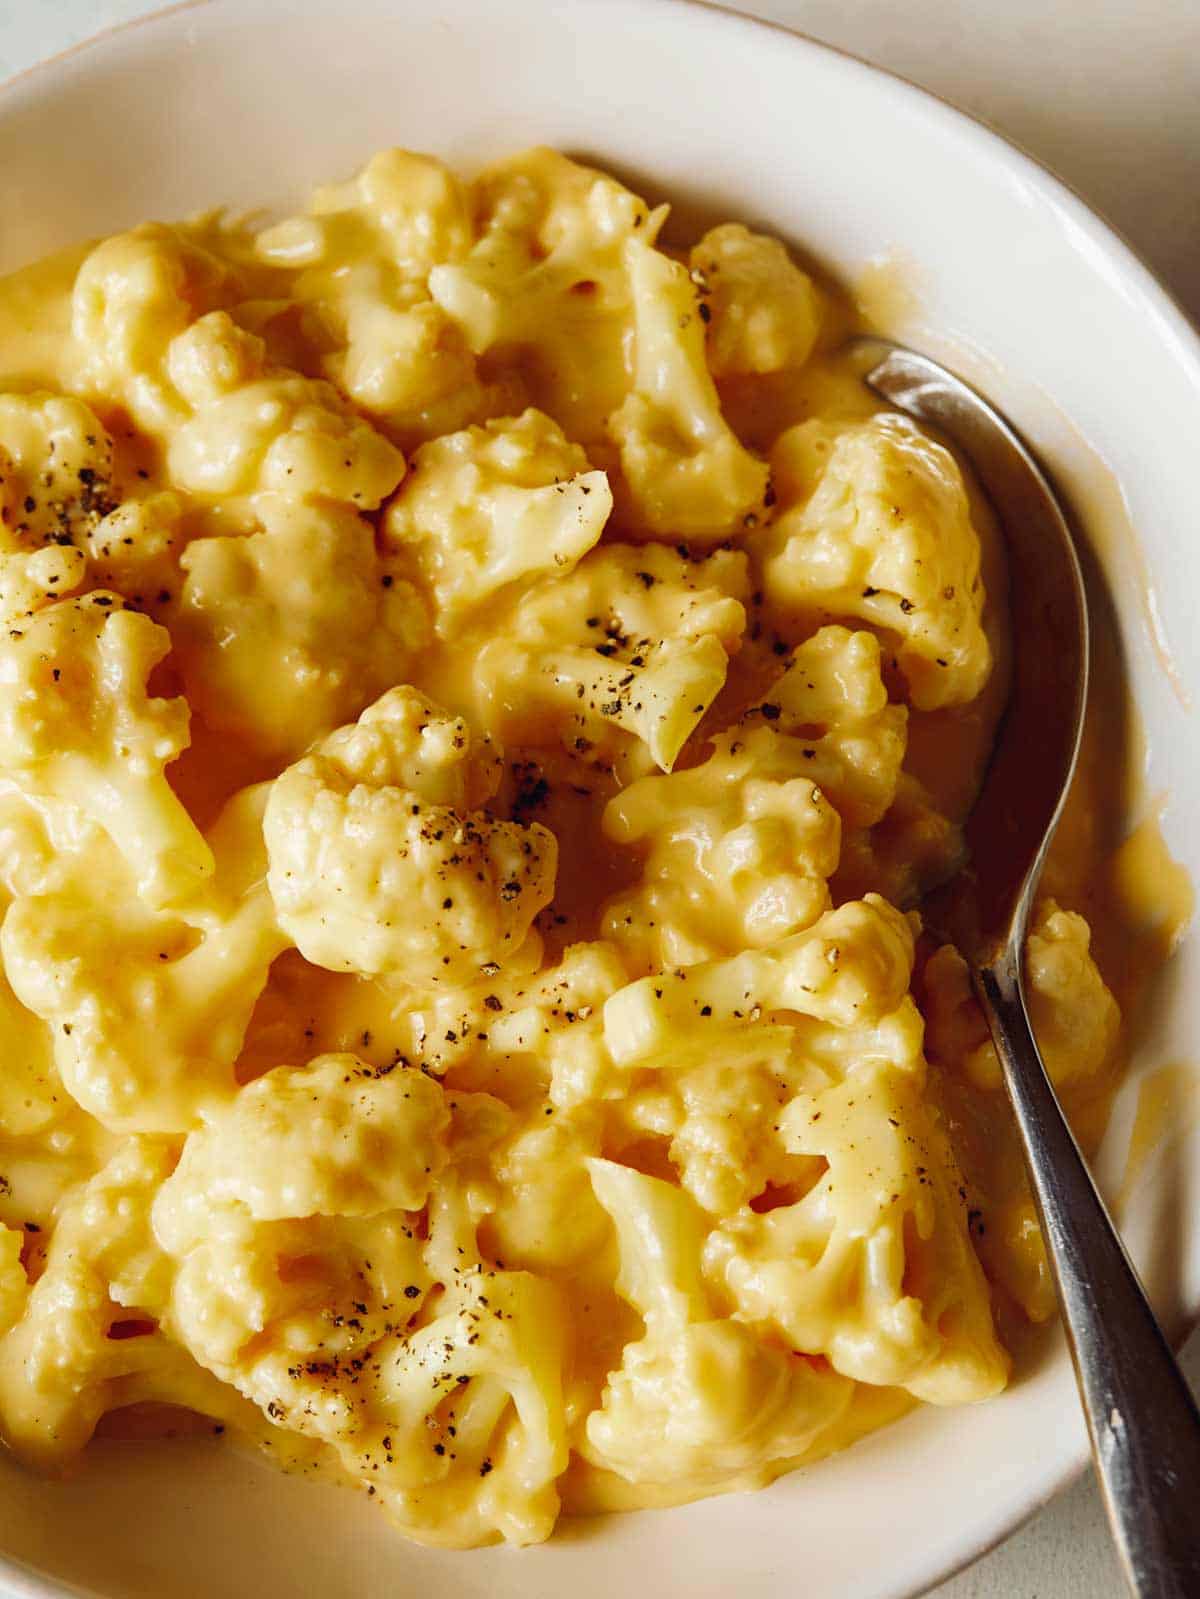 Cauliflower "Mac" and Cheese Recipe.